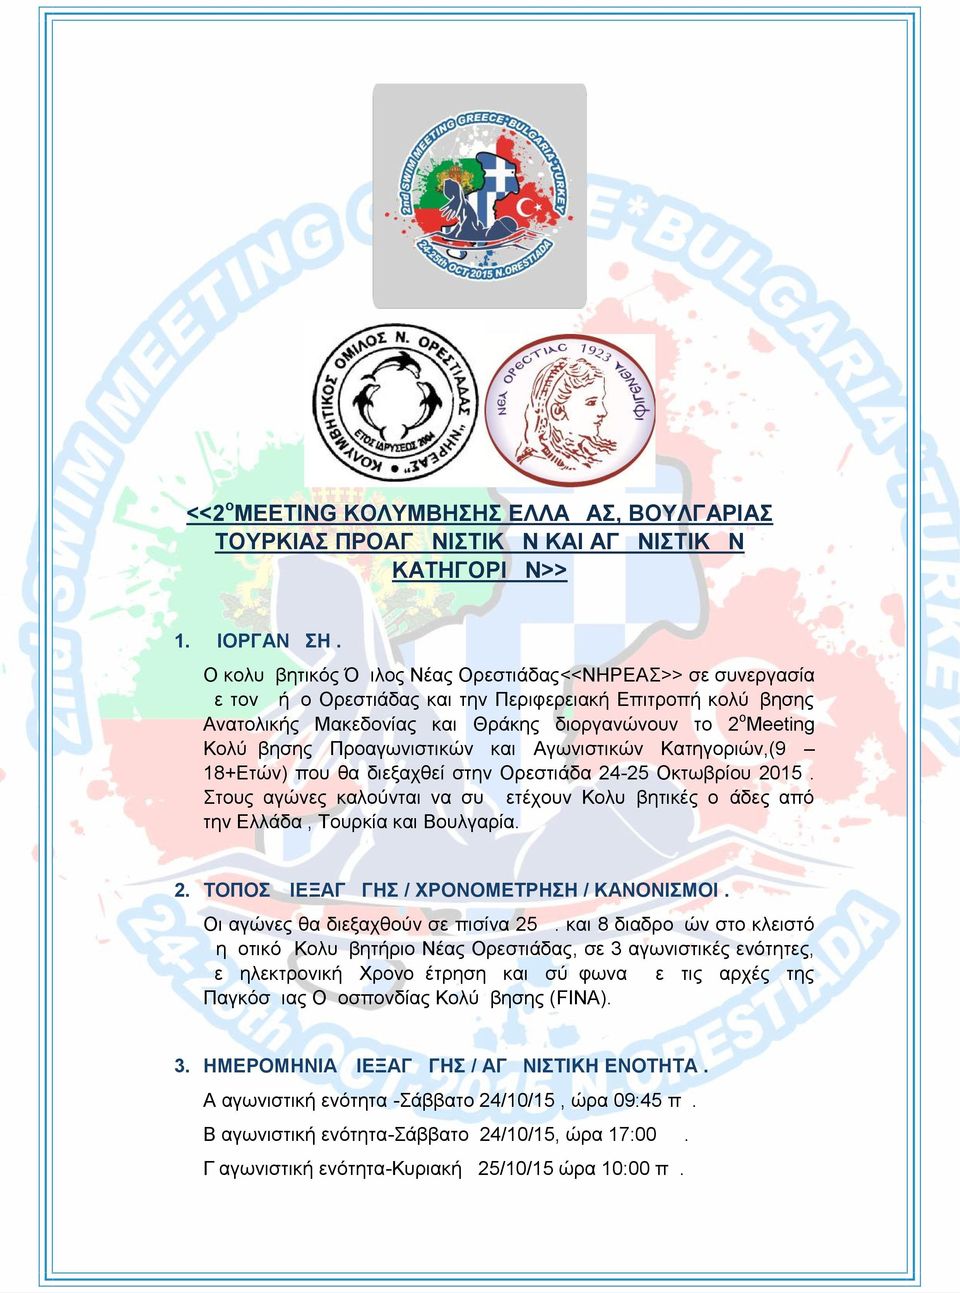 Προαγωνιστικών και Αγωνιστικών Κατηγοριών,(9 18+Ετών) που θα διεξαχθεί στην Ορεστιάδα 24-25 Οκτωβρίου 2015.